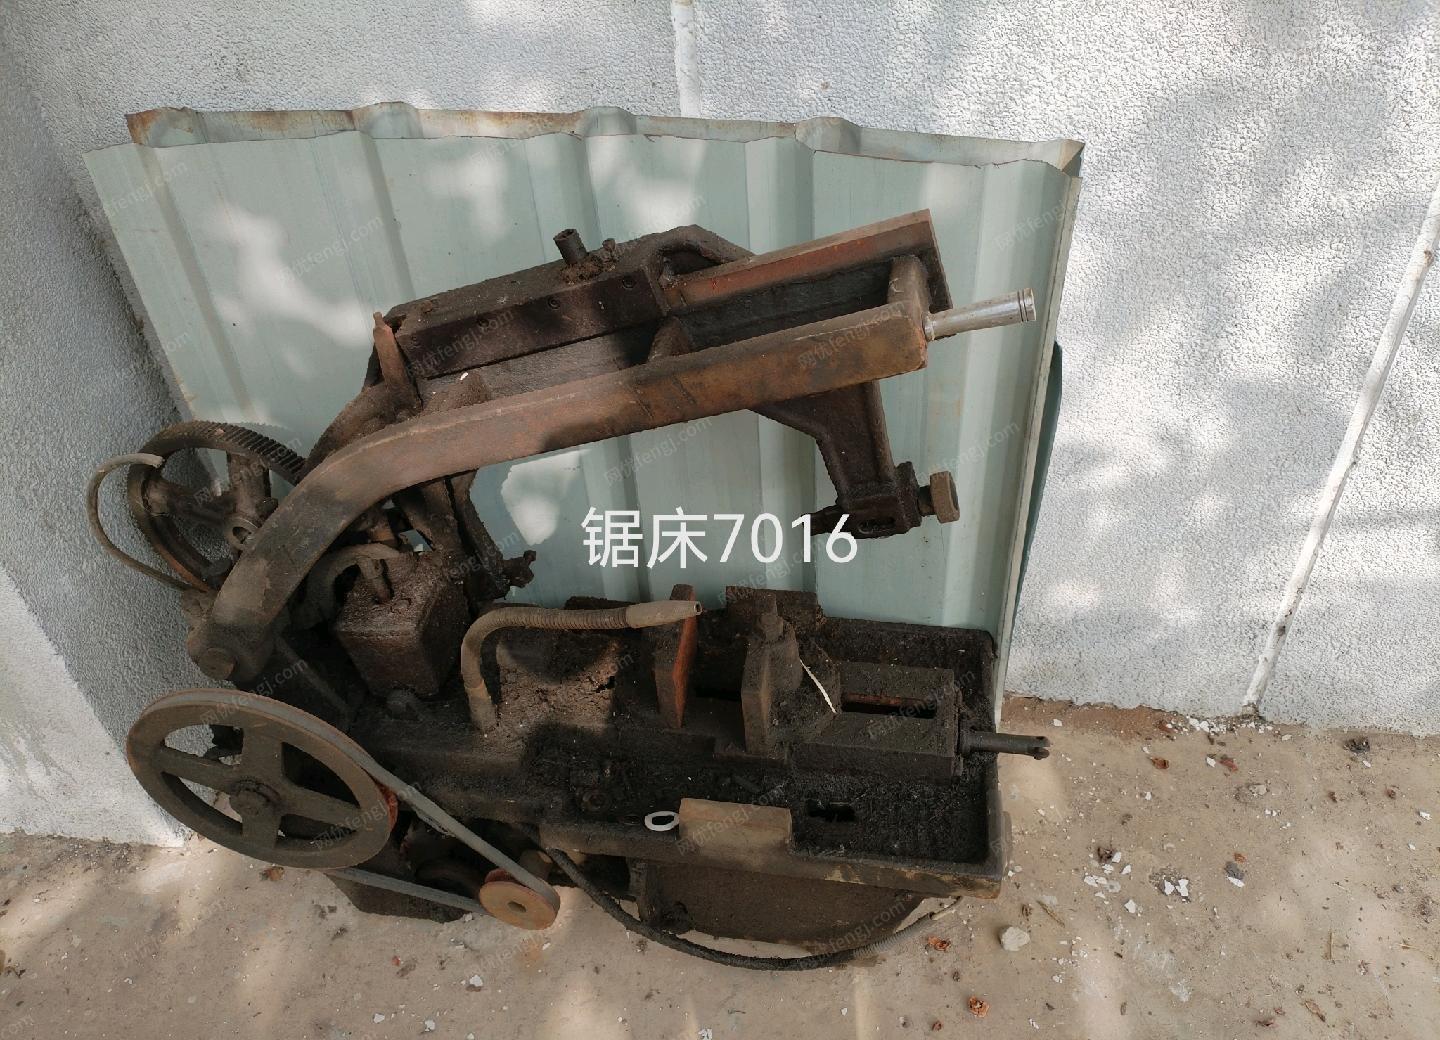 北京房山区处理摇臂钻、铣床、锯床、等离子切割机、电焊机